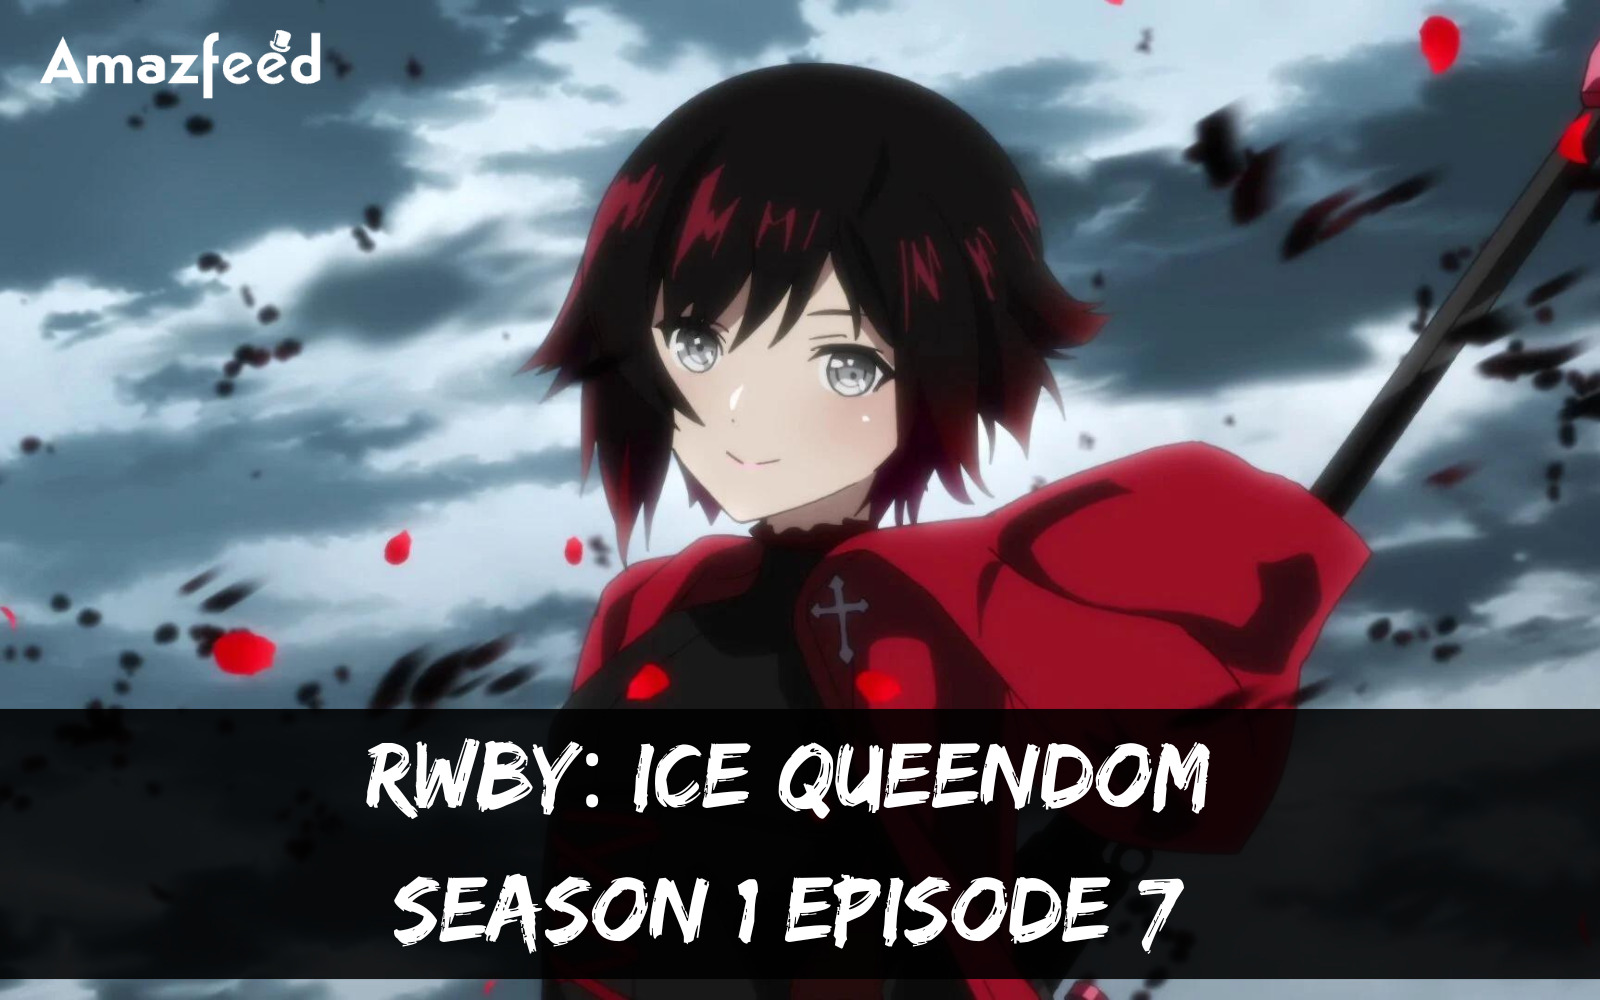 RWBY Ice Queendom Season 1 Episode 7 release date